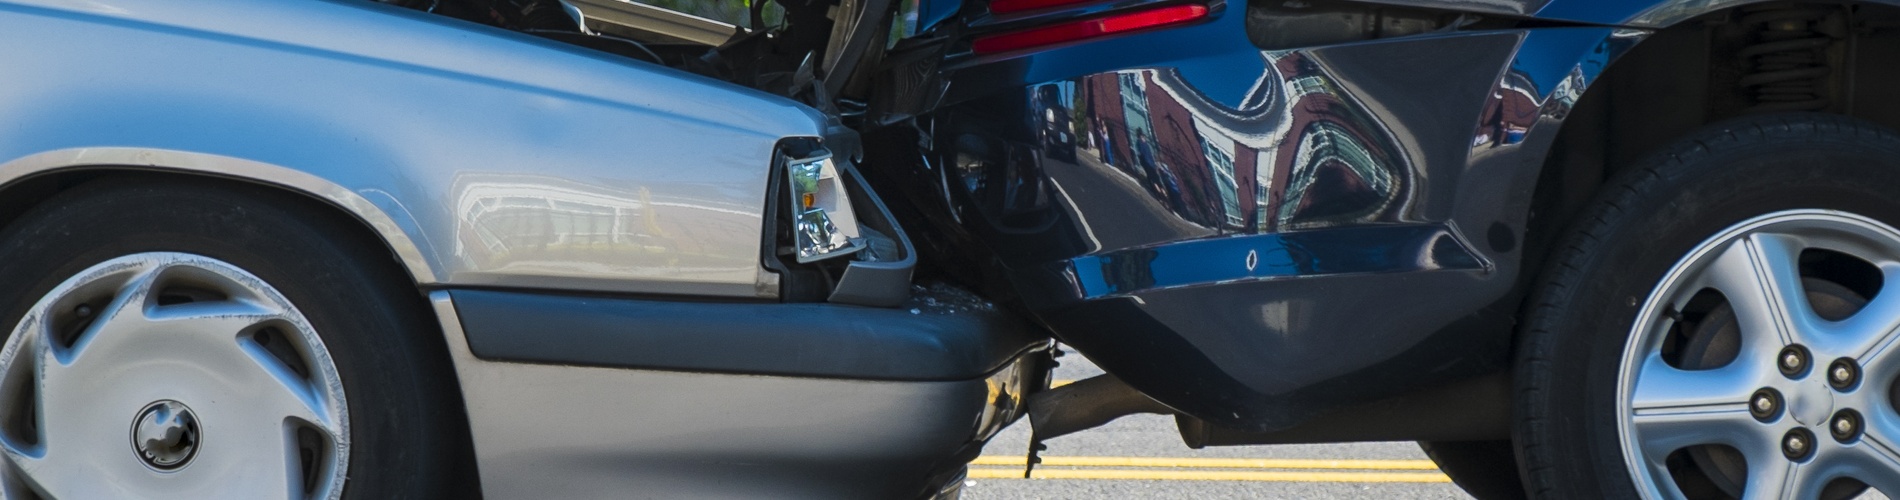 fault & non-fault claim: car accident